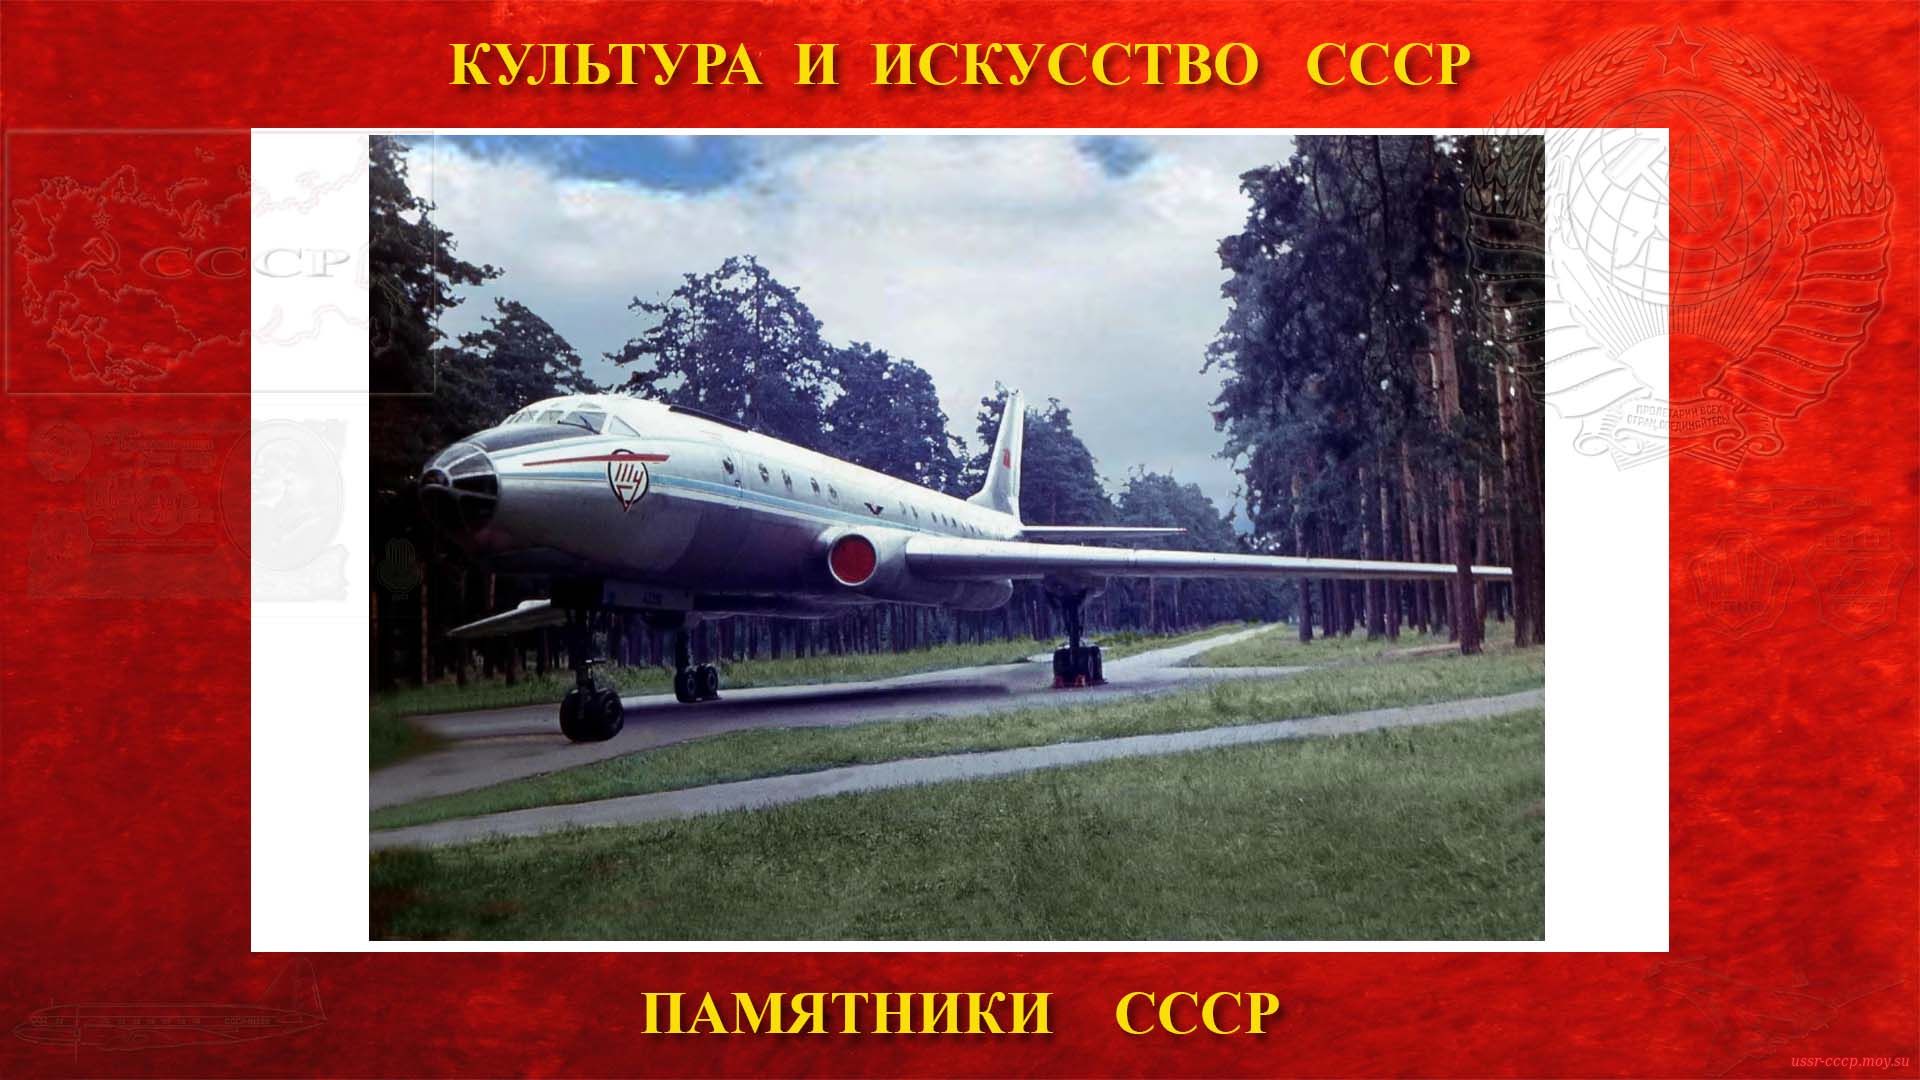 Памятник — Самолёт Ту-104А СССР-42396 (Жуковский) (повествование)